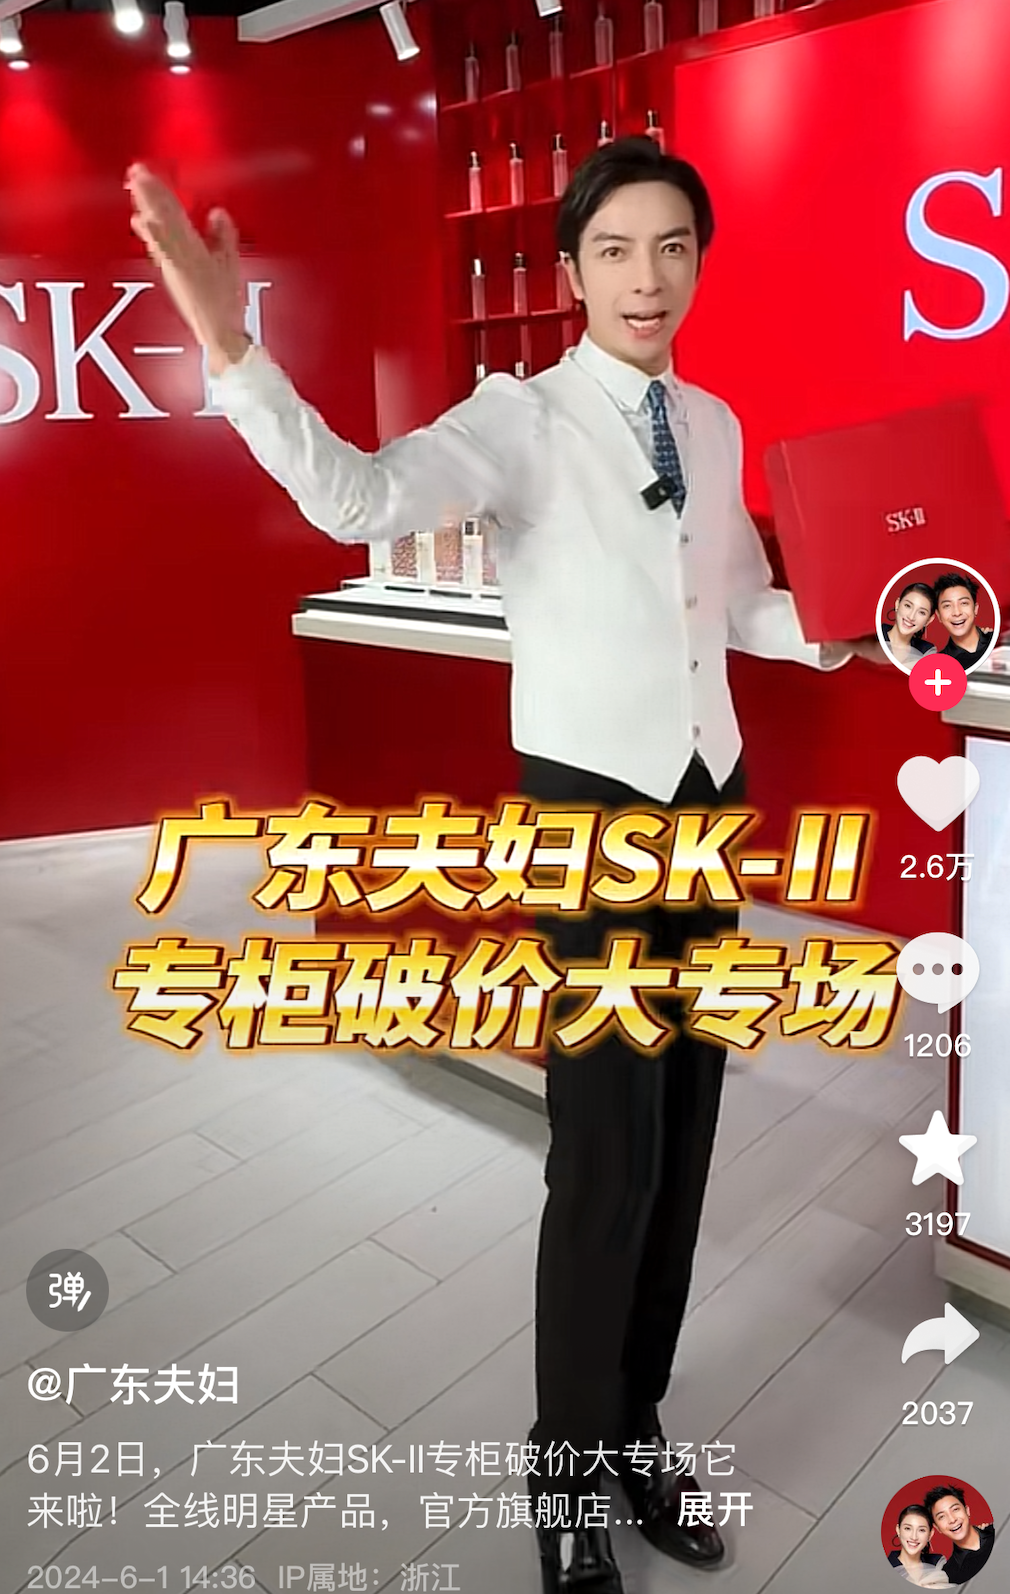 في 2 يونيو، قام الزوجان من قوانغدونغ (@广东夫妇) بالترويج لـ SK-II خلال جلسة مبيعات البث المباشر مباشرة من عداد SK-II.  الصورة: @广东夫妇 دوين